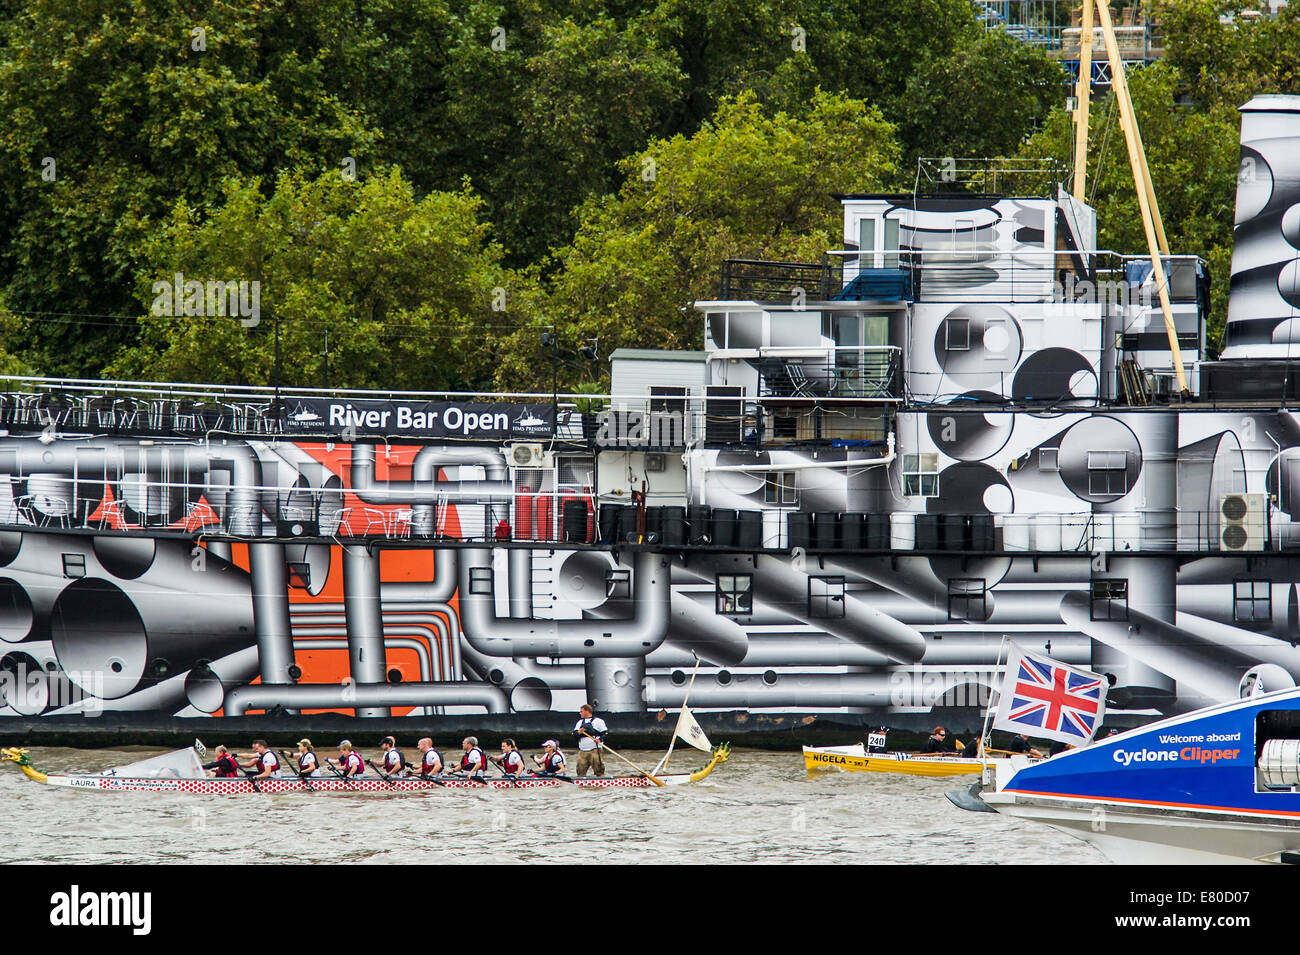 Col bateau HMS Président qui a été peint en 'Dazzle' de la peinture de camouflage en commémoration de la PREMIÈRE GUERRE MONDIALE, le grand fleuve de la race, London's River Marathon (aussi connu sous le nom de UK bateau traditionnel) - un championnat 21.6 Miles boat race jusqu'à la rivière Thames à partir de London Docklands à Ham à Surrey. Il attire plus de 300 équipages venus du monde entier et fait appel à tous les niveaux de concurrent de ceux qui aiment le plaisir, fantaisie et de charité des cascades, à de graves les sportifs. Tamise, Londres, 27 septembre 2014. Banque D'Images